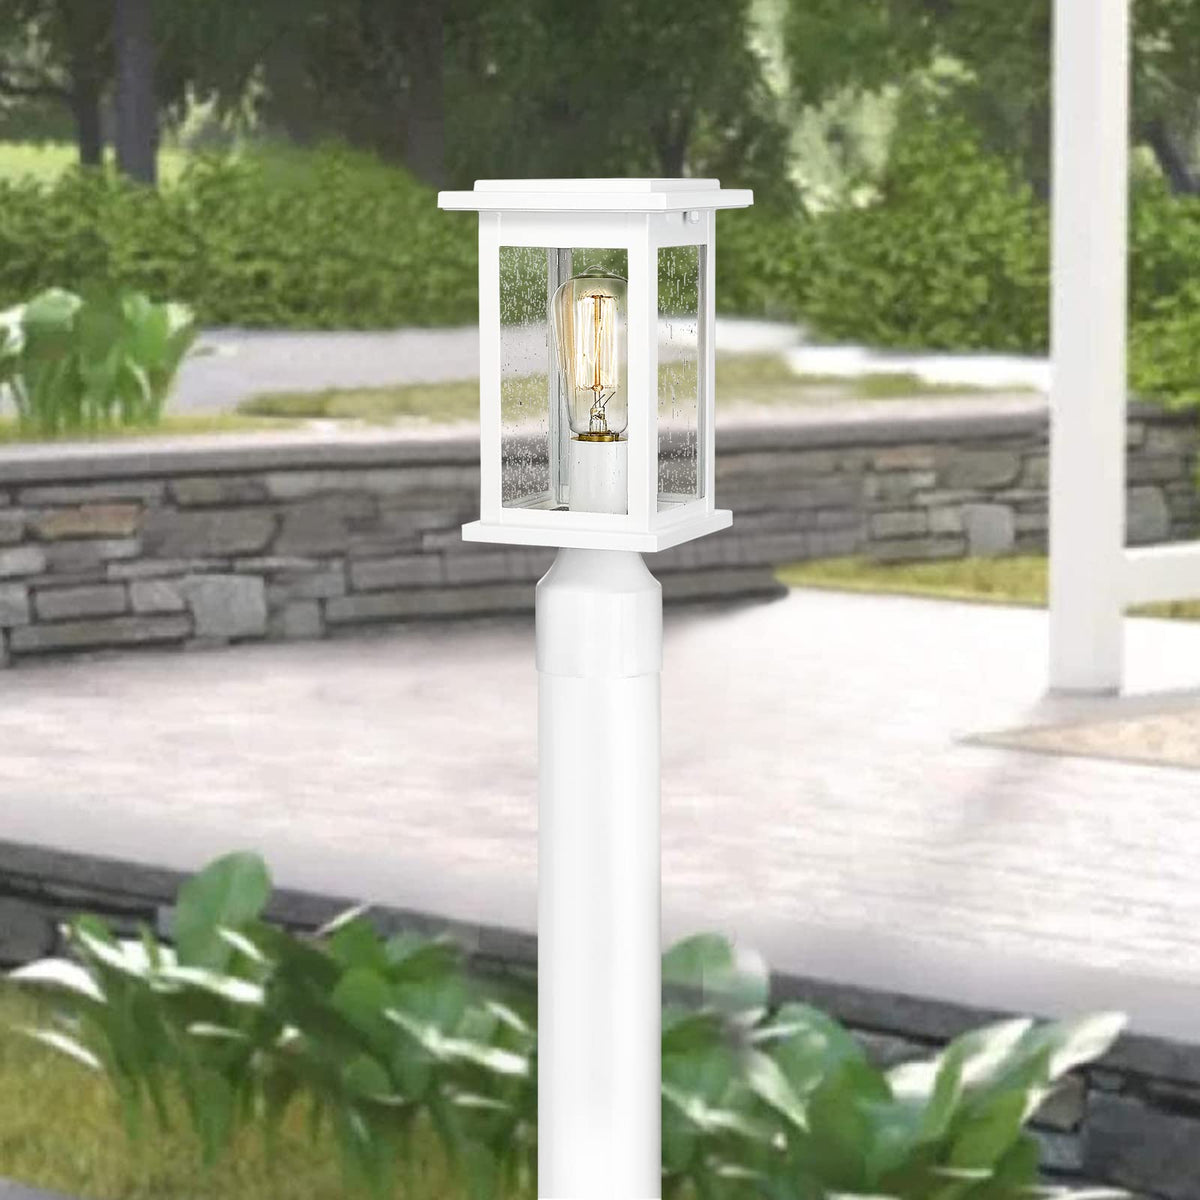 Emliviar Outdoor Lamp Post Light Fixture, Modern Exterior Post Lantern